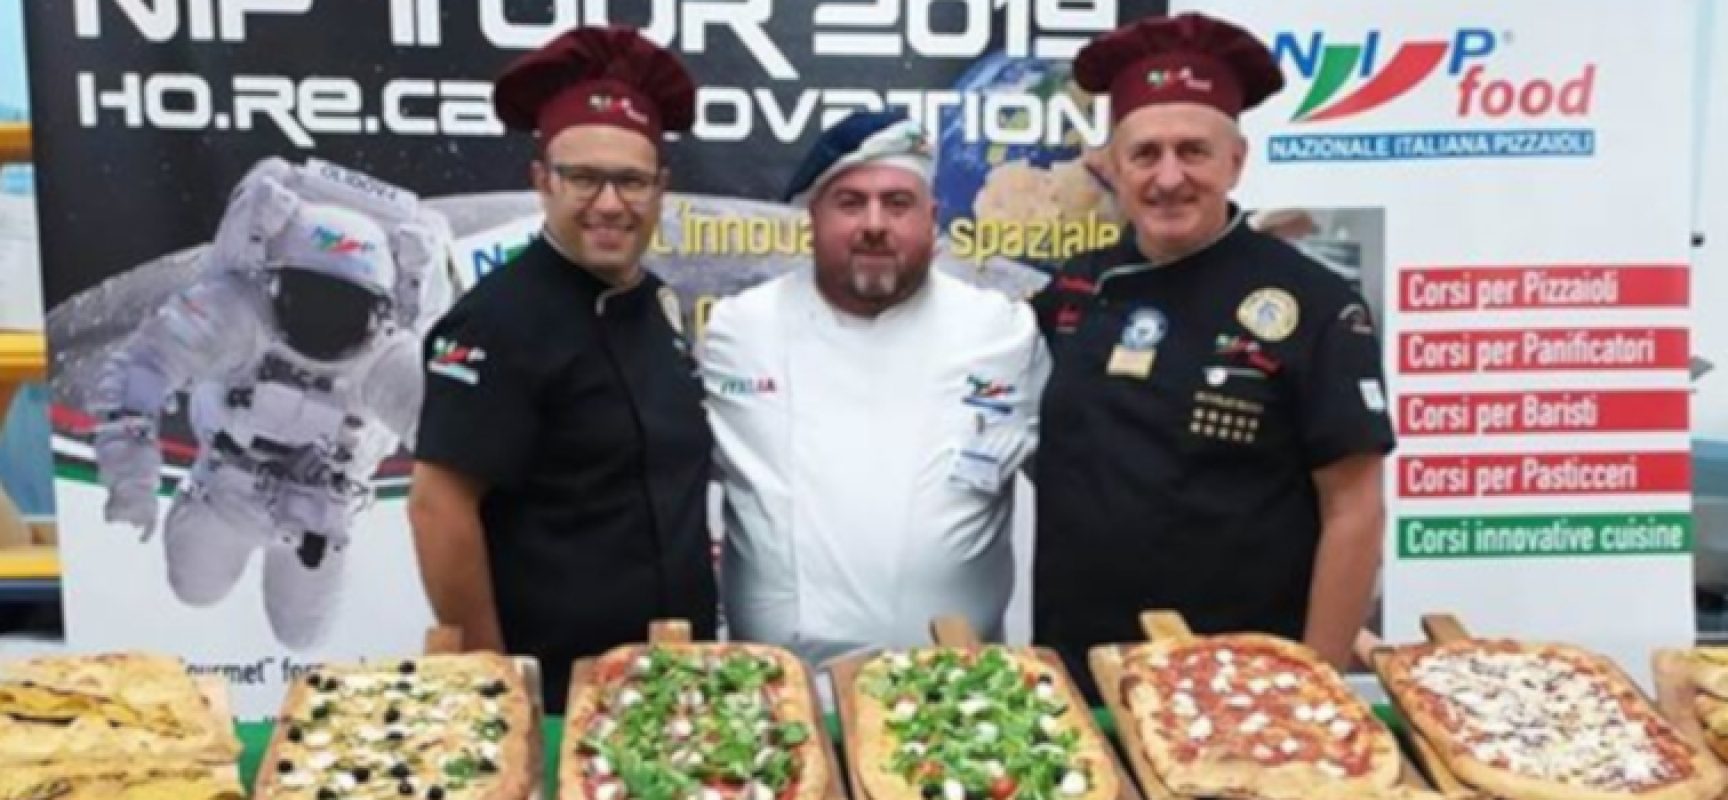 Nazionale Italiana Pizzaioli, prestigioso riconoscimento per il biscegliese Francesco Pellegrini